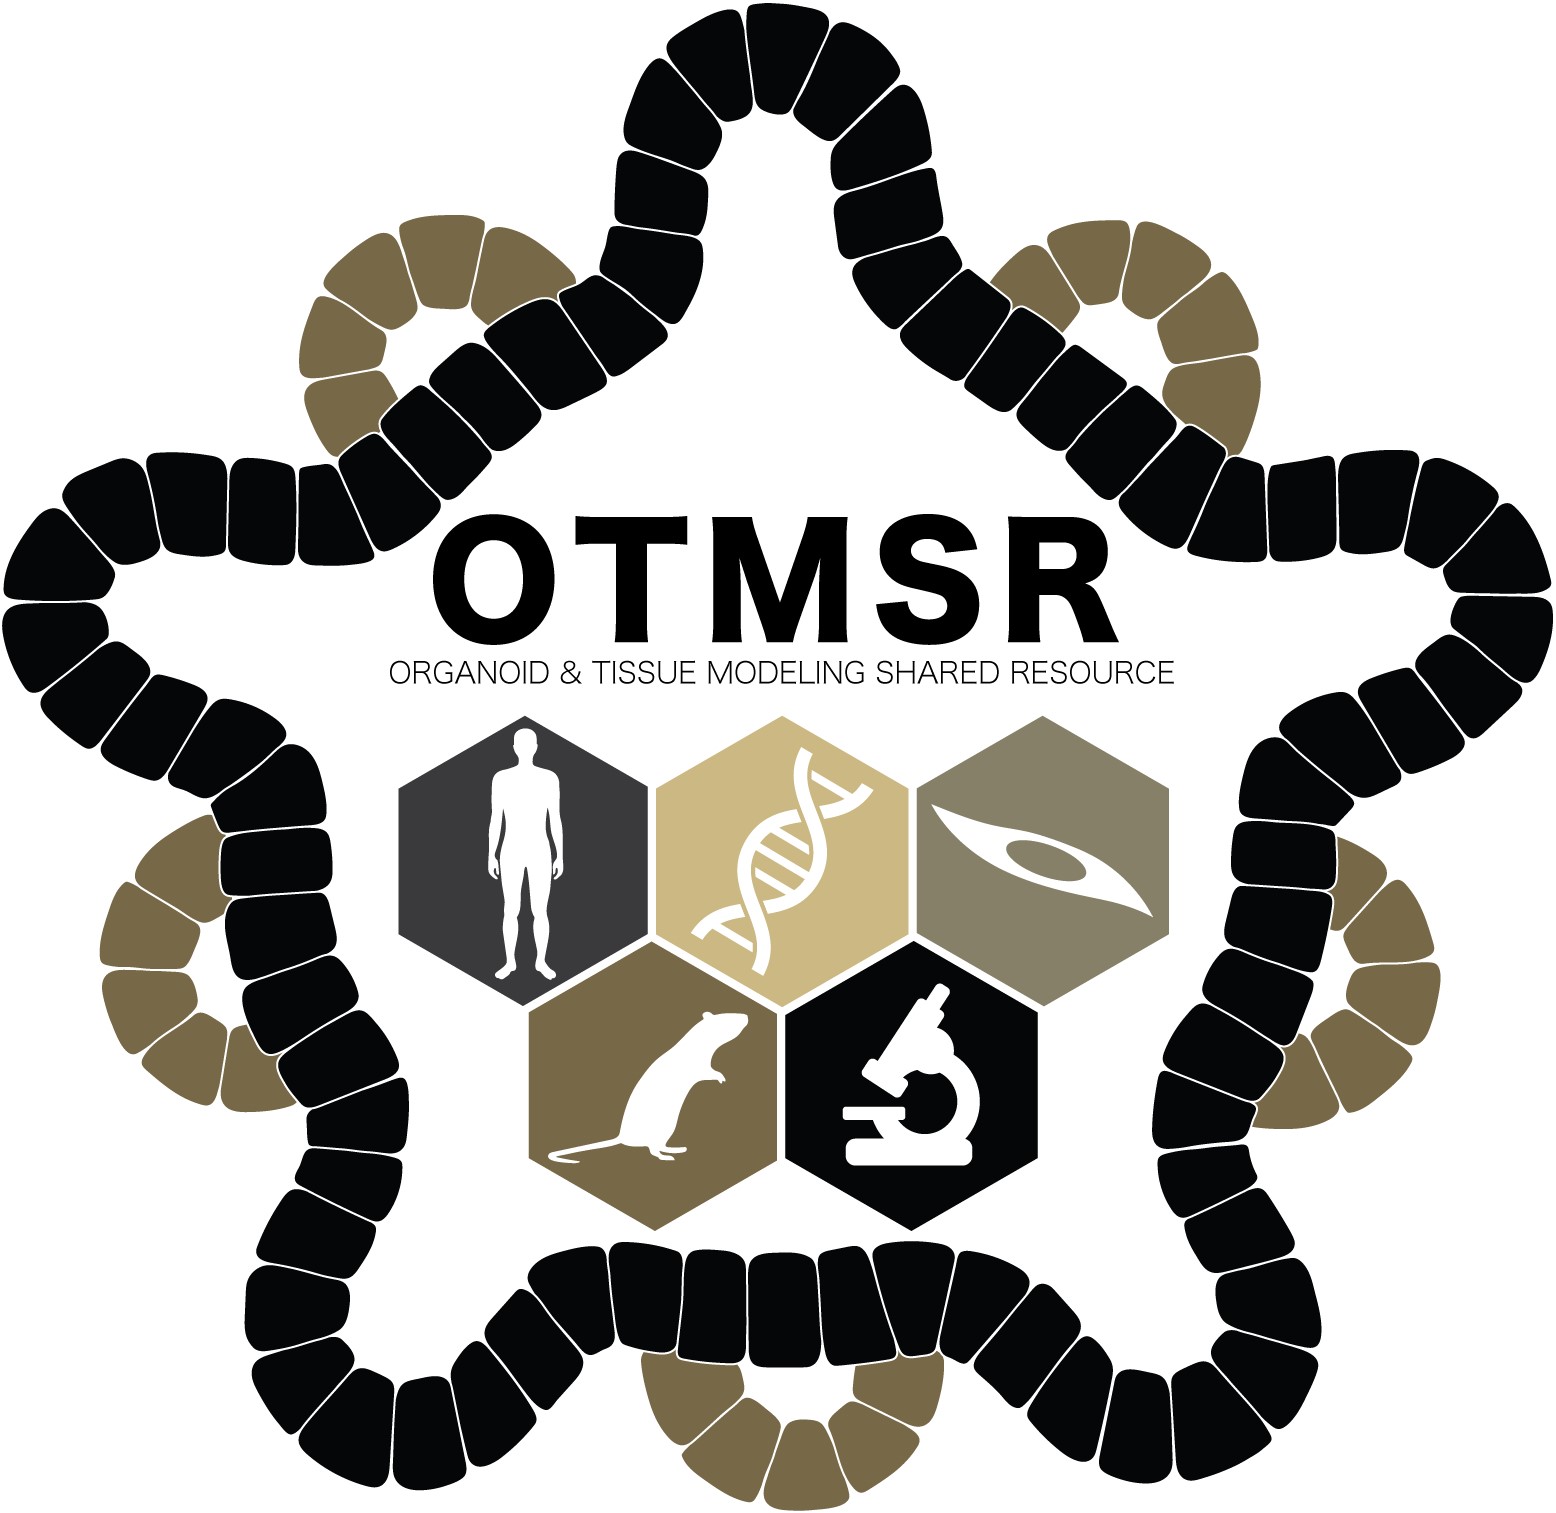 OTMSR logo